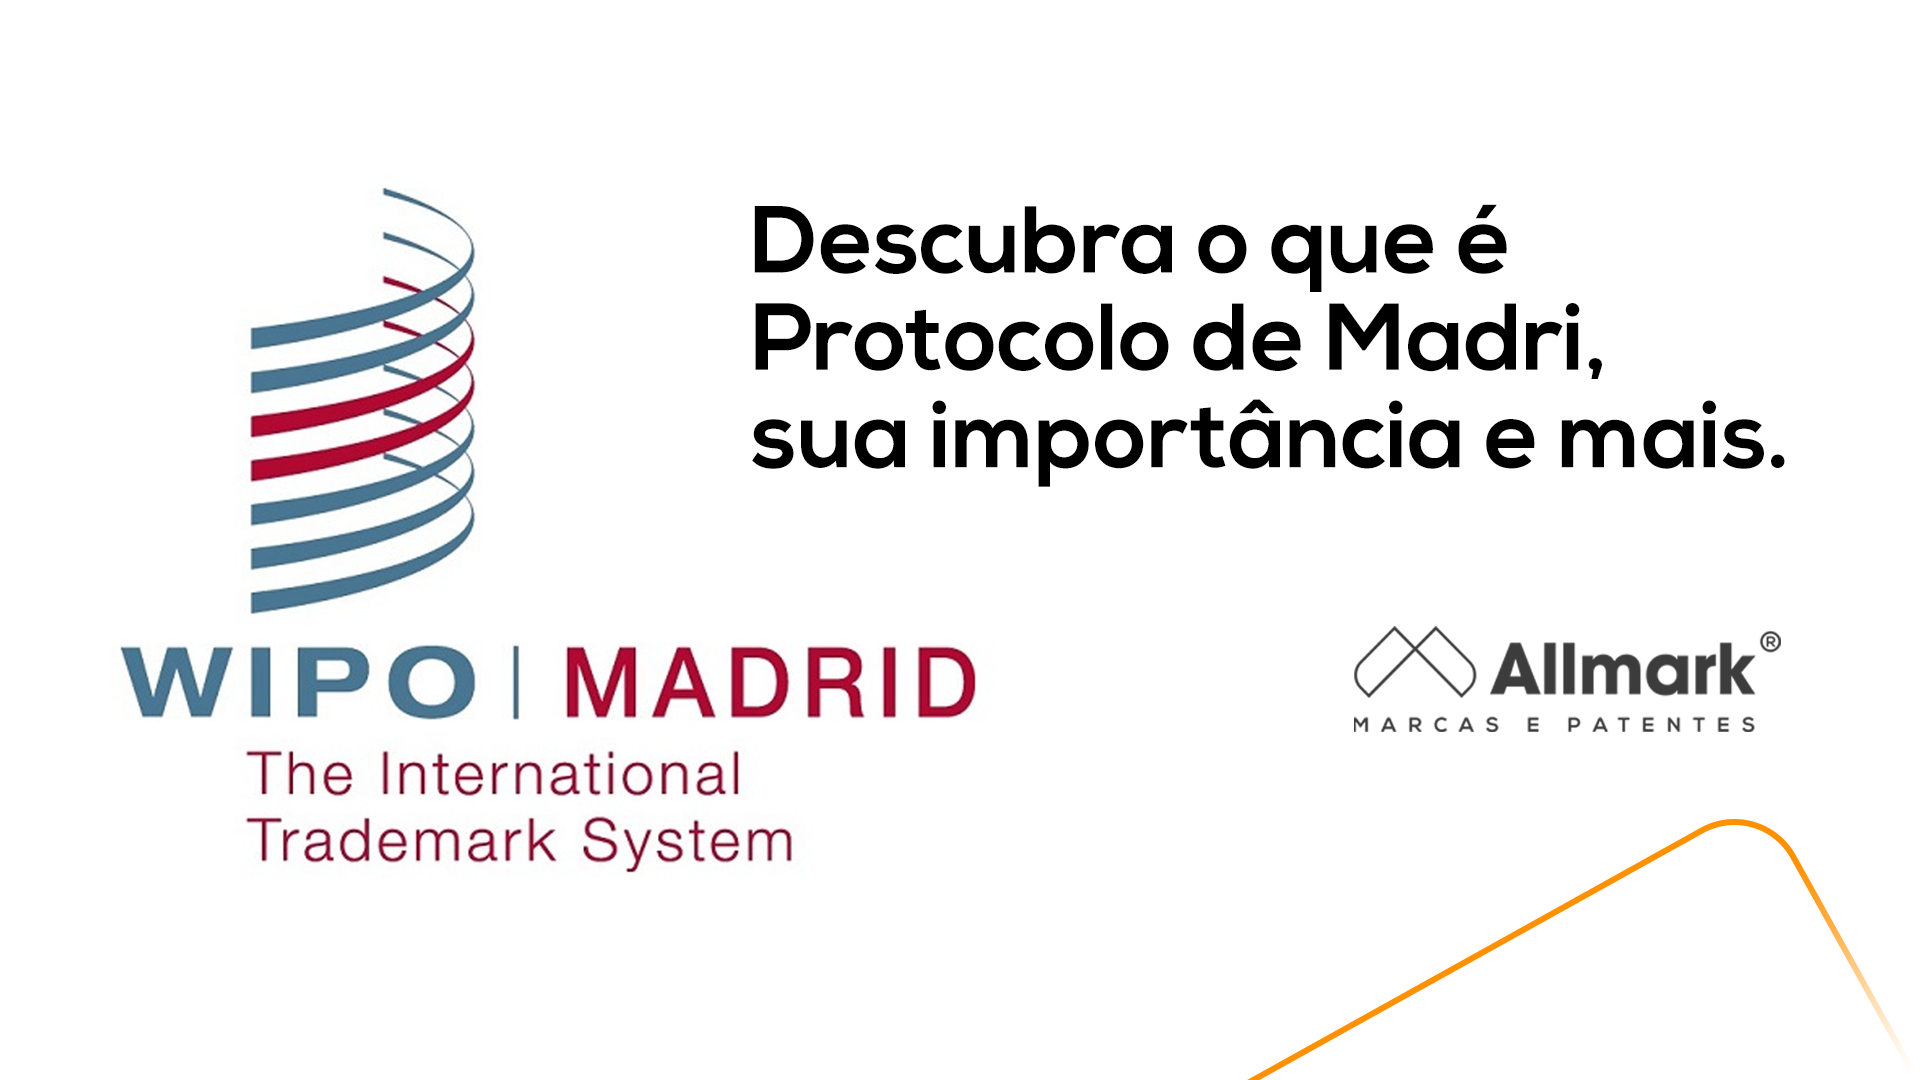 Descubra o que é Protocolo de Madri, sua importância e mais